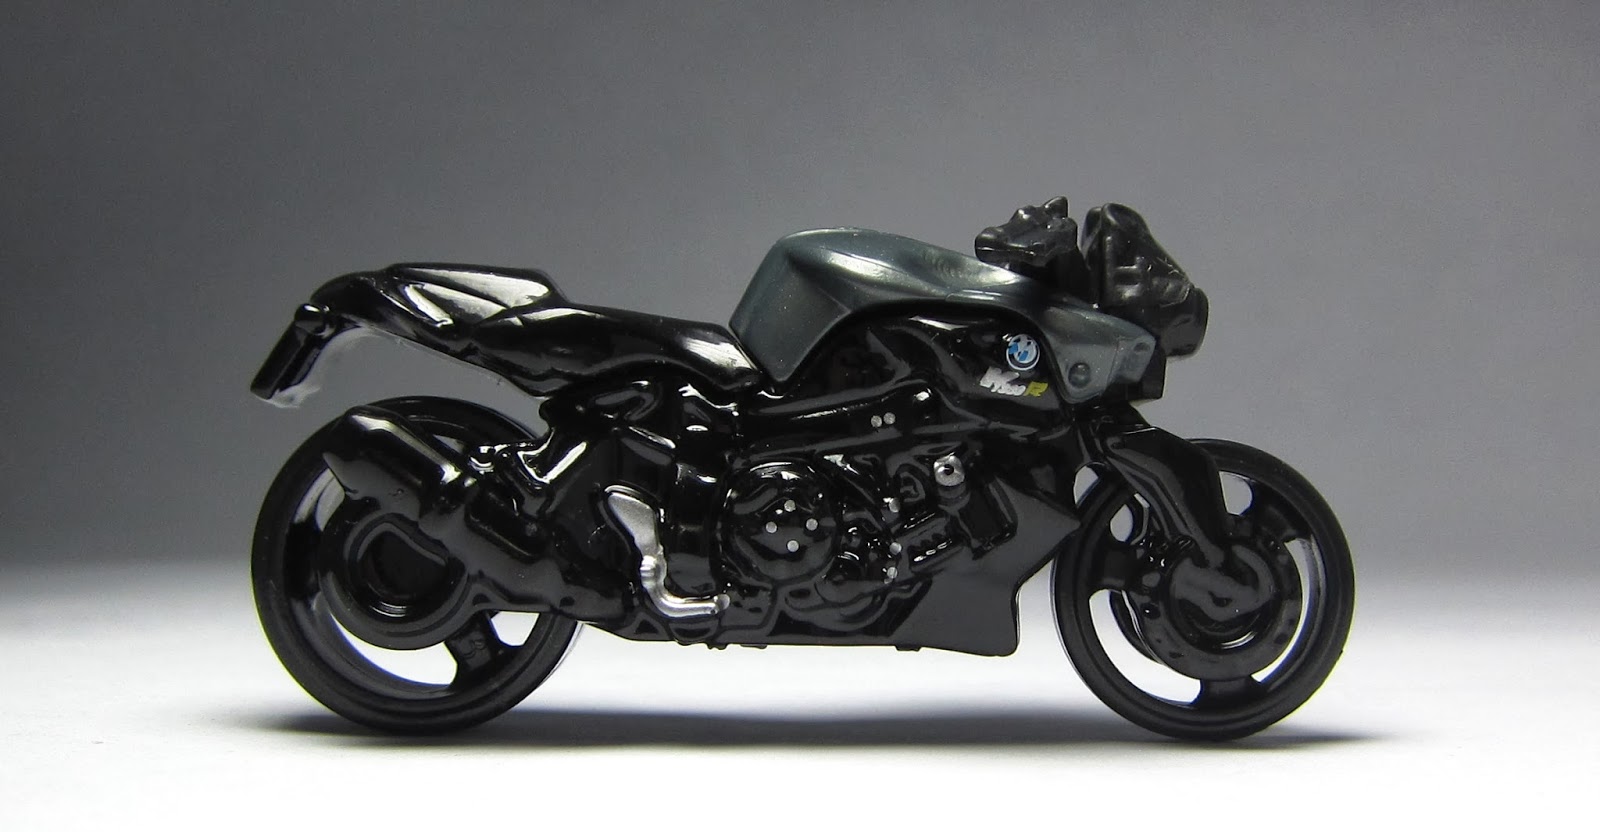 Best Motorcycle 2014: First Look: 2014 Hot Wheels BMW K1300 R Motorcycle...